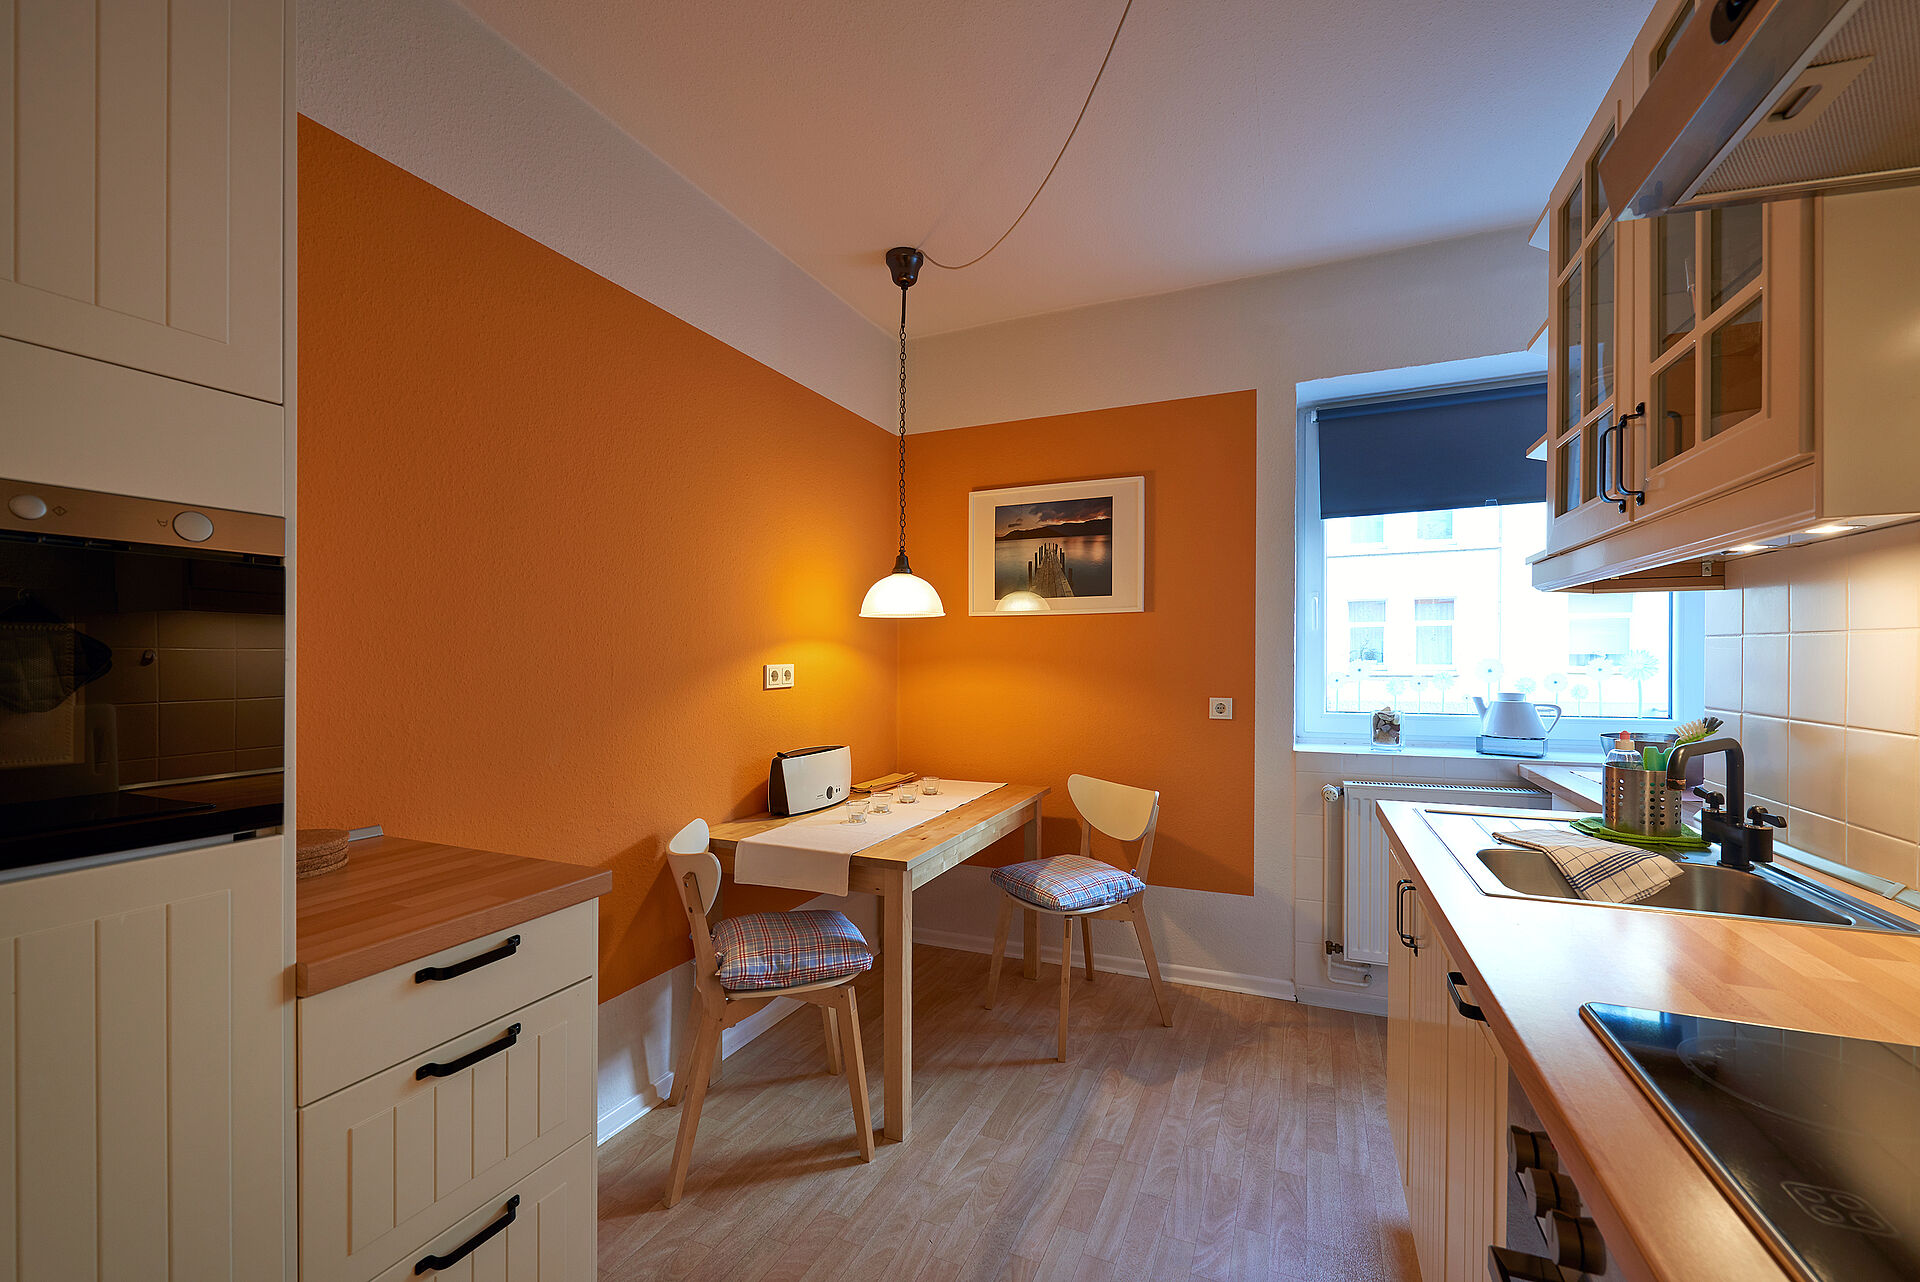 Eine helle Küche mit einer orange gestrichenen Wand, davor ein Küchentisch mit zwei Stühlen